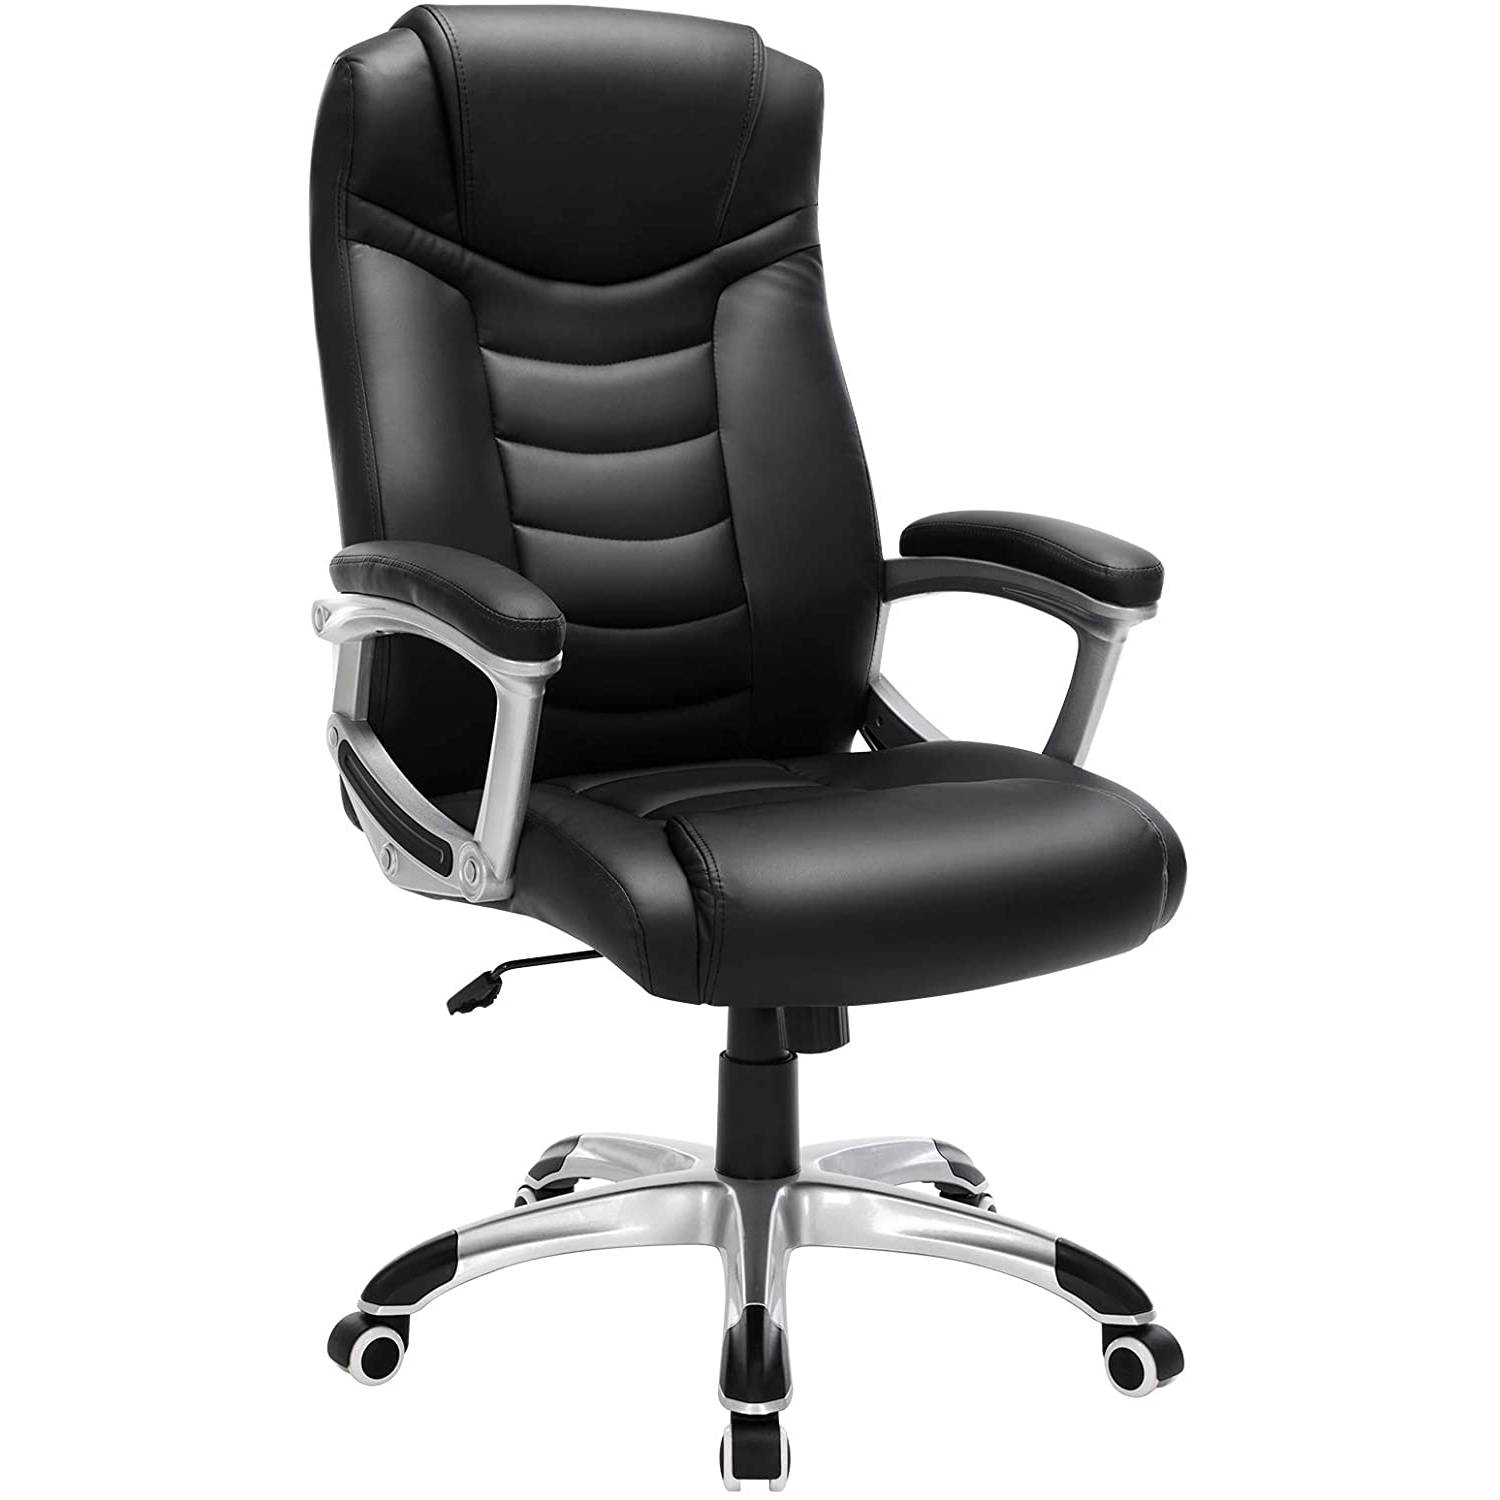 Ergodu luxe design bureaustoel met hoog zitcomfort